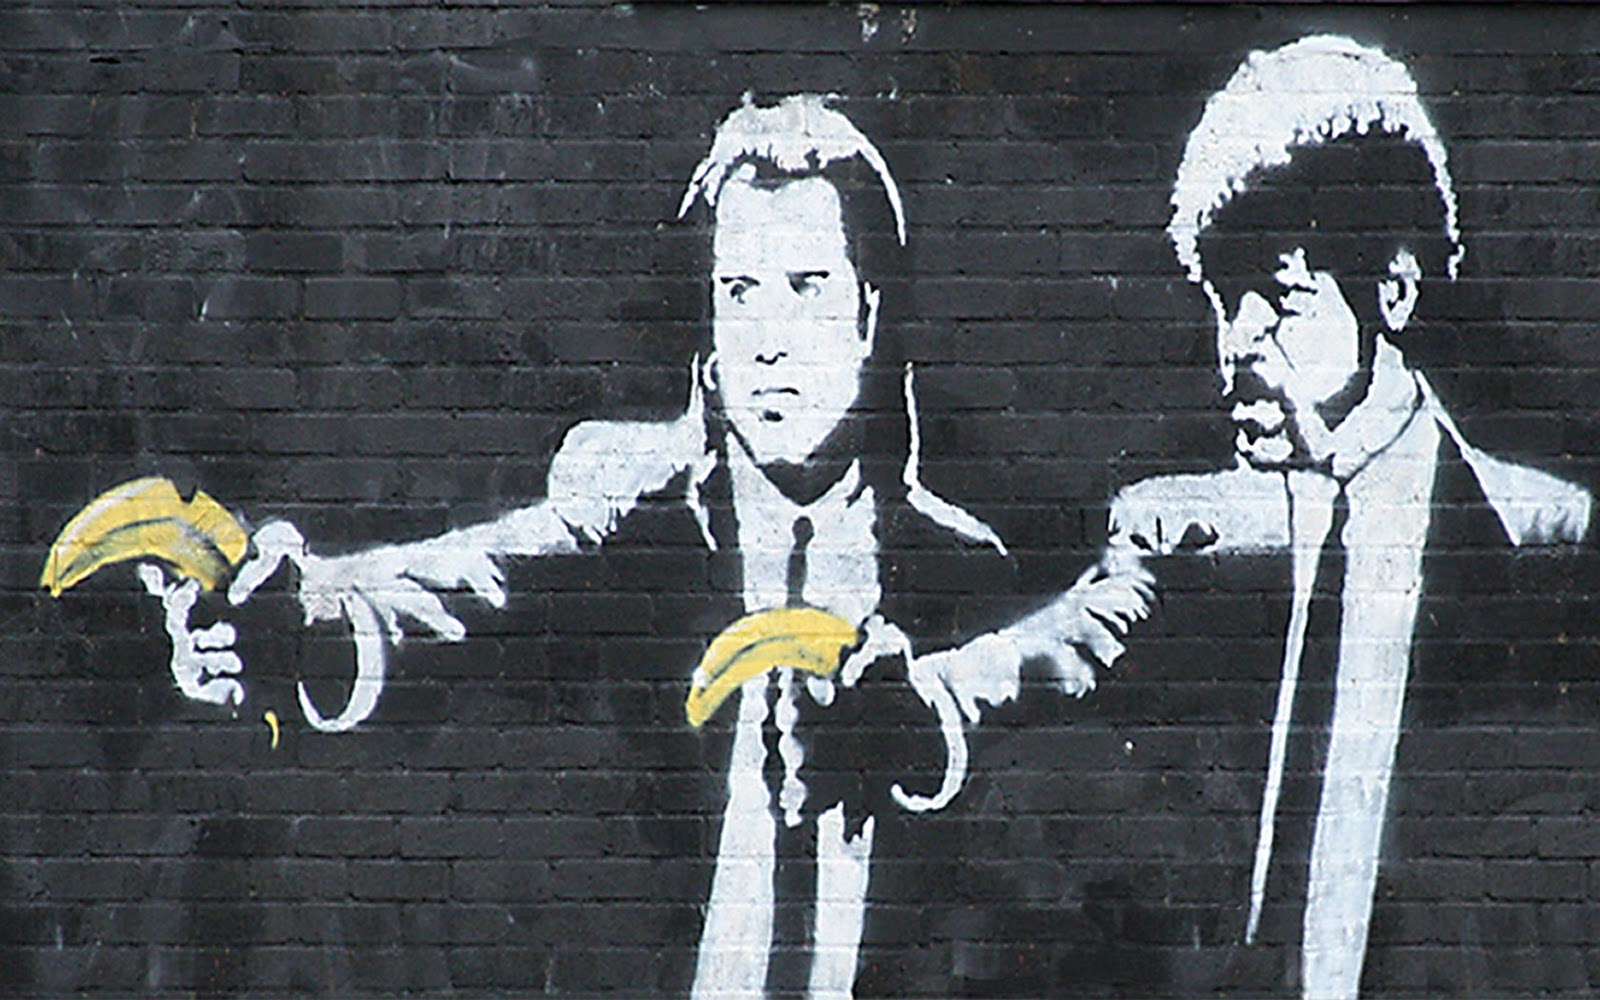 mystreetartblog: Banksy street art recap